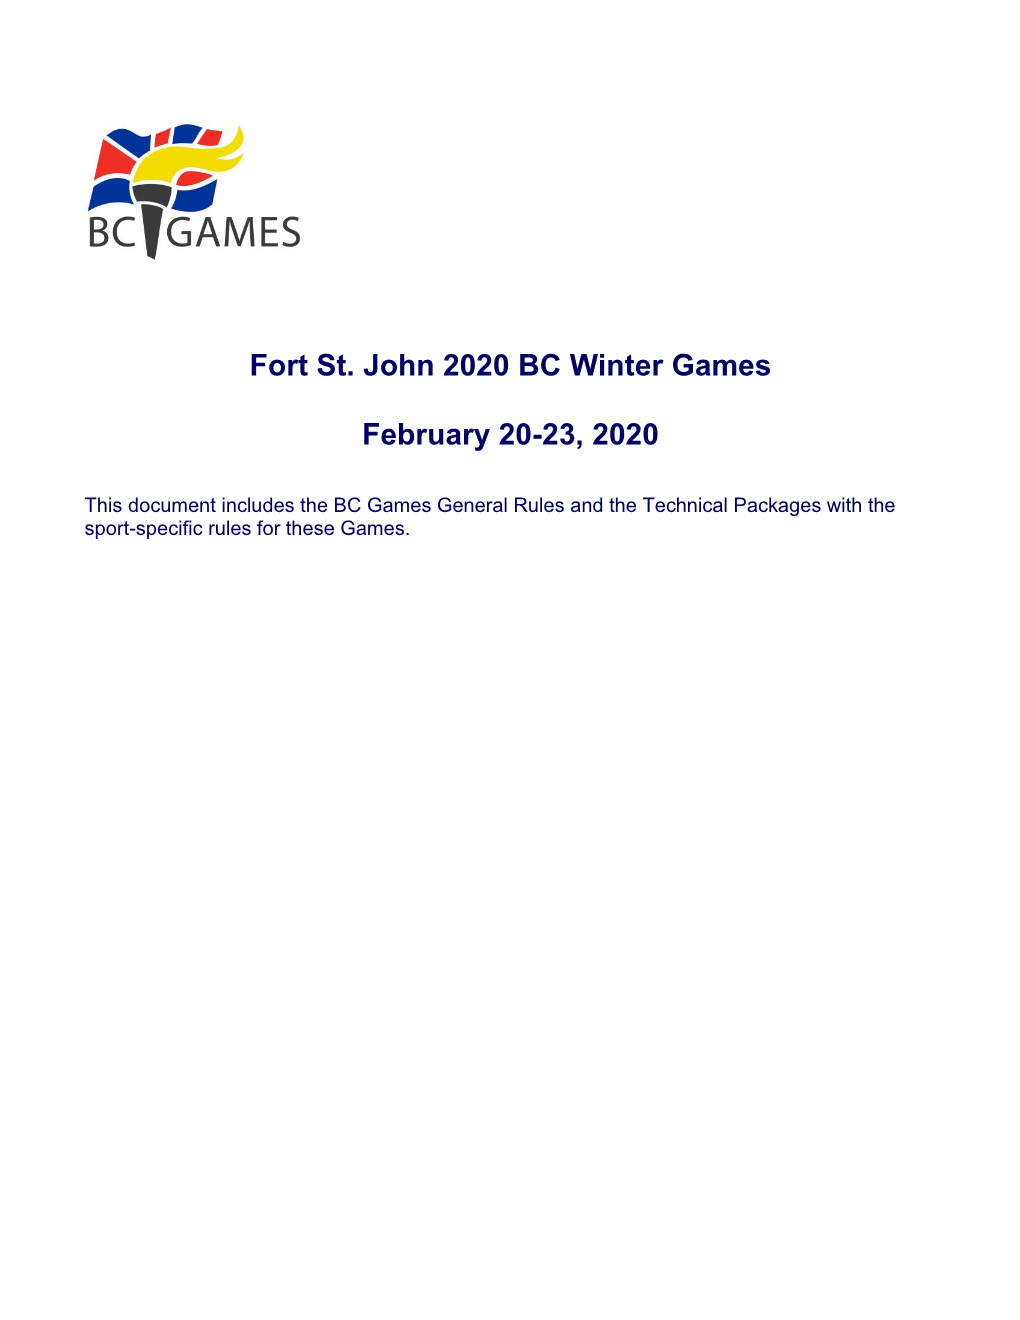 Fort St. John 2020 BC Winter Games February 20